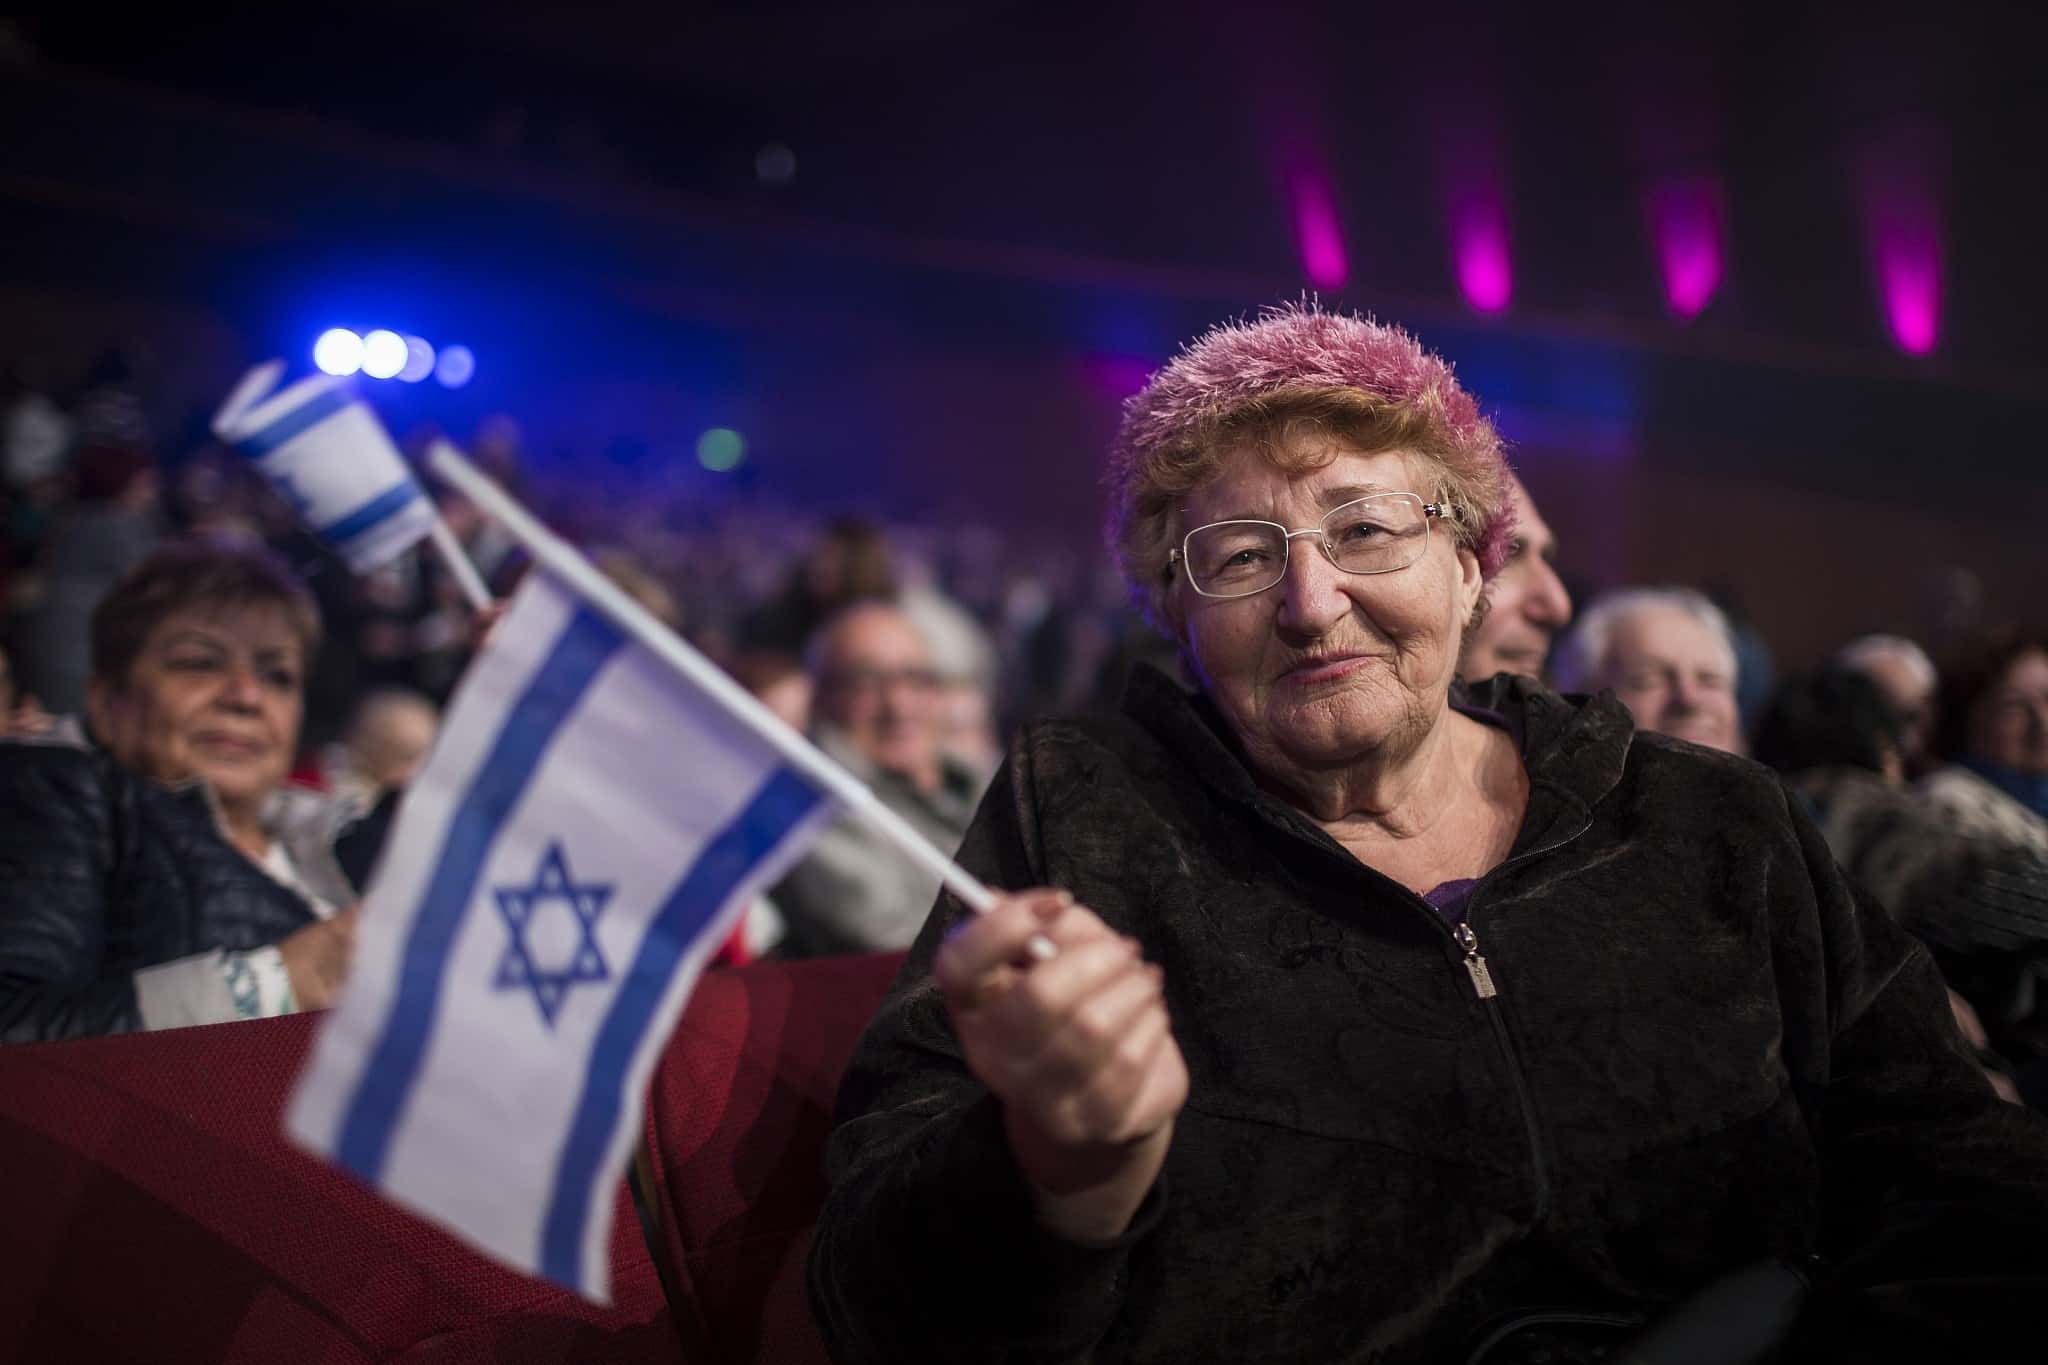 כנס עולים בירושלים לציון 25 שנות עלייה, 2015 (צילום: הדס פרוש/פלאש 90)